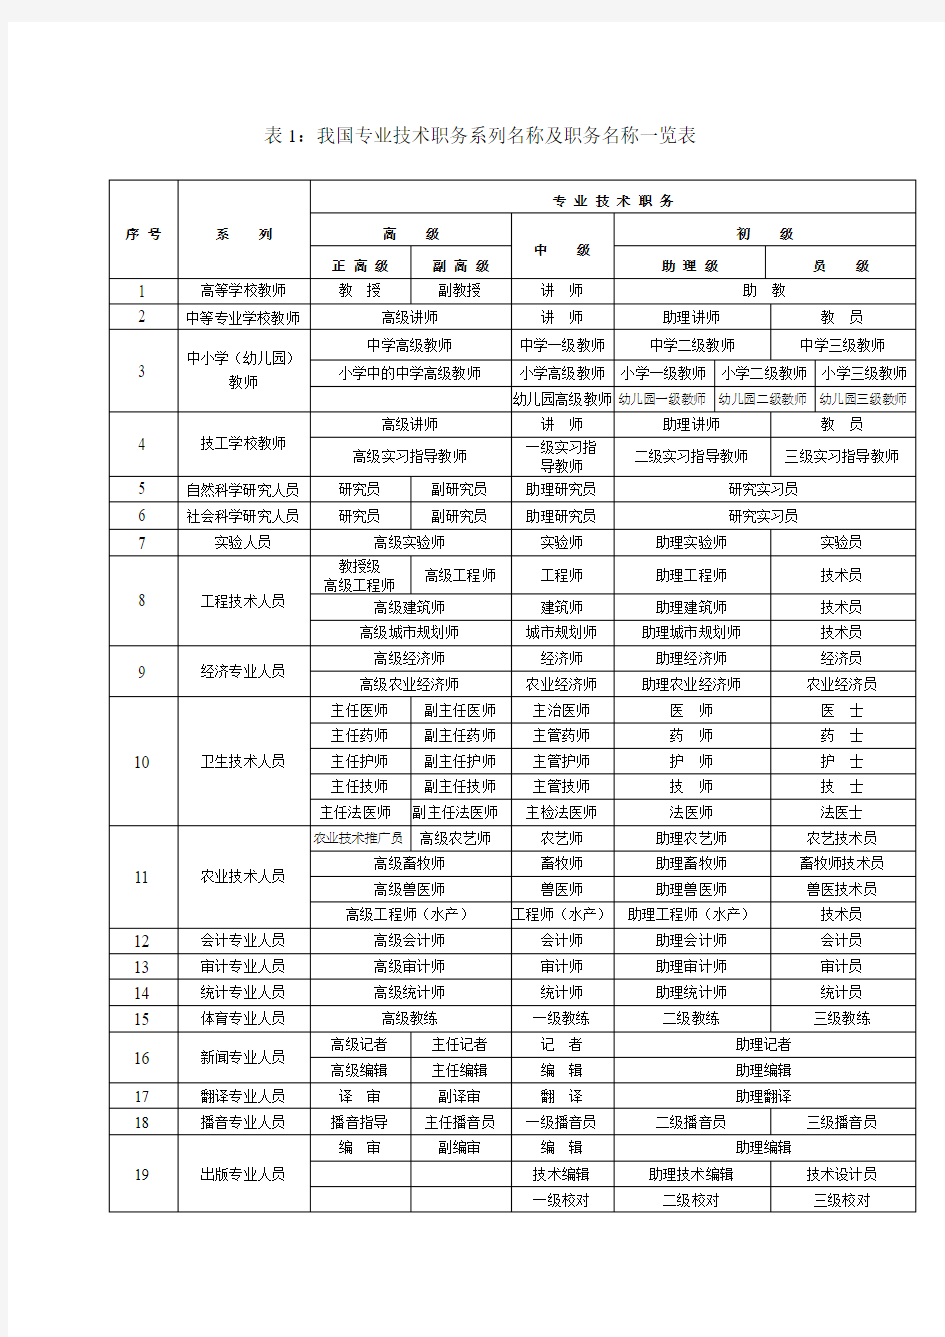 中国专业技术职务资格一览表